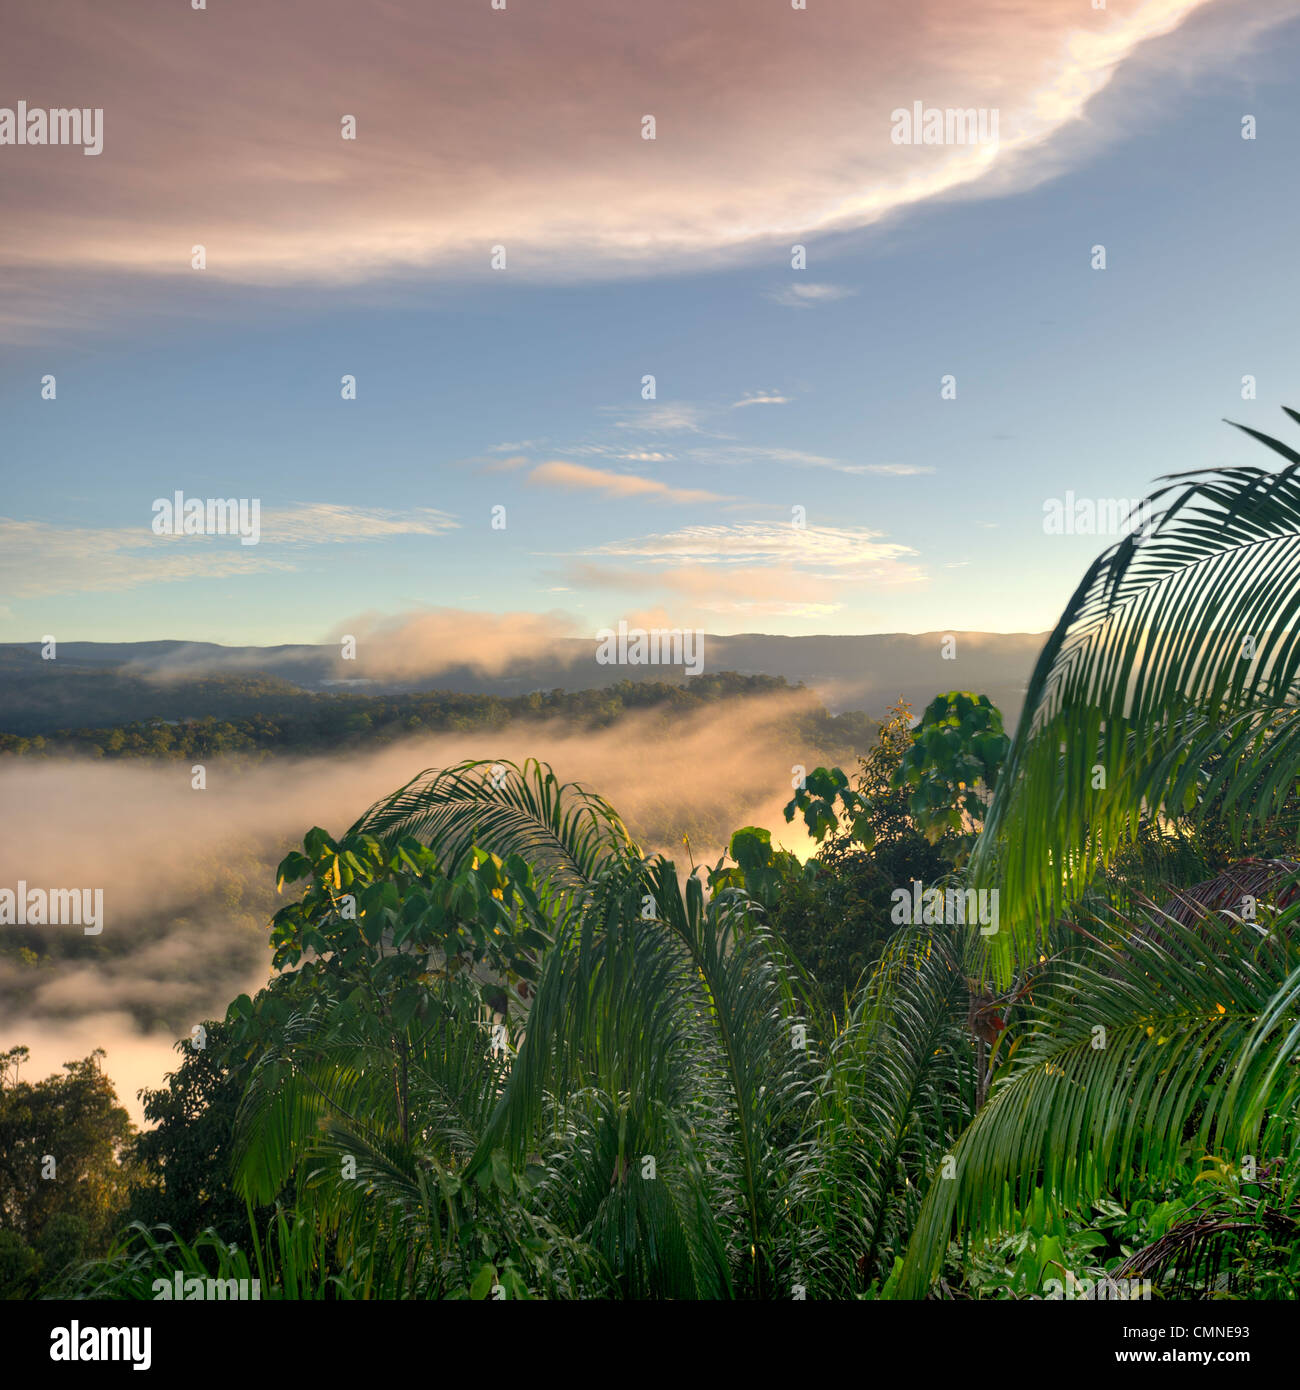 Un amanecer/vista del amanecer en el corazón de Maliau Basin, tomada desde el borde de la meseta sur, cerca del campamento Lobah, Borneo Foto de stock